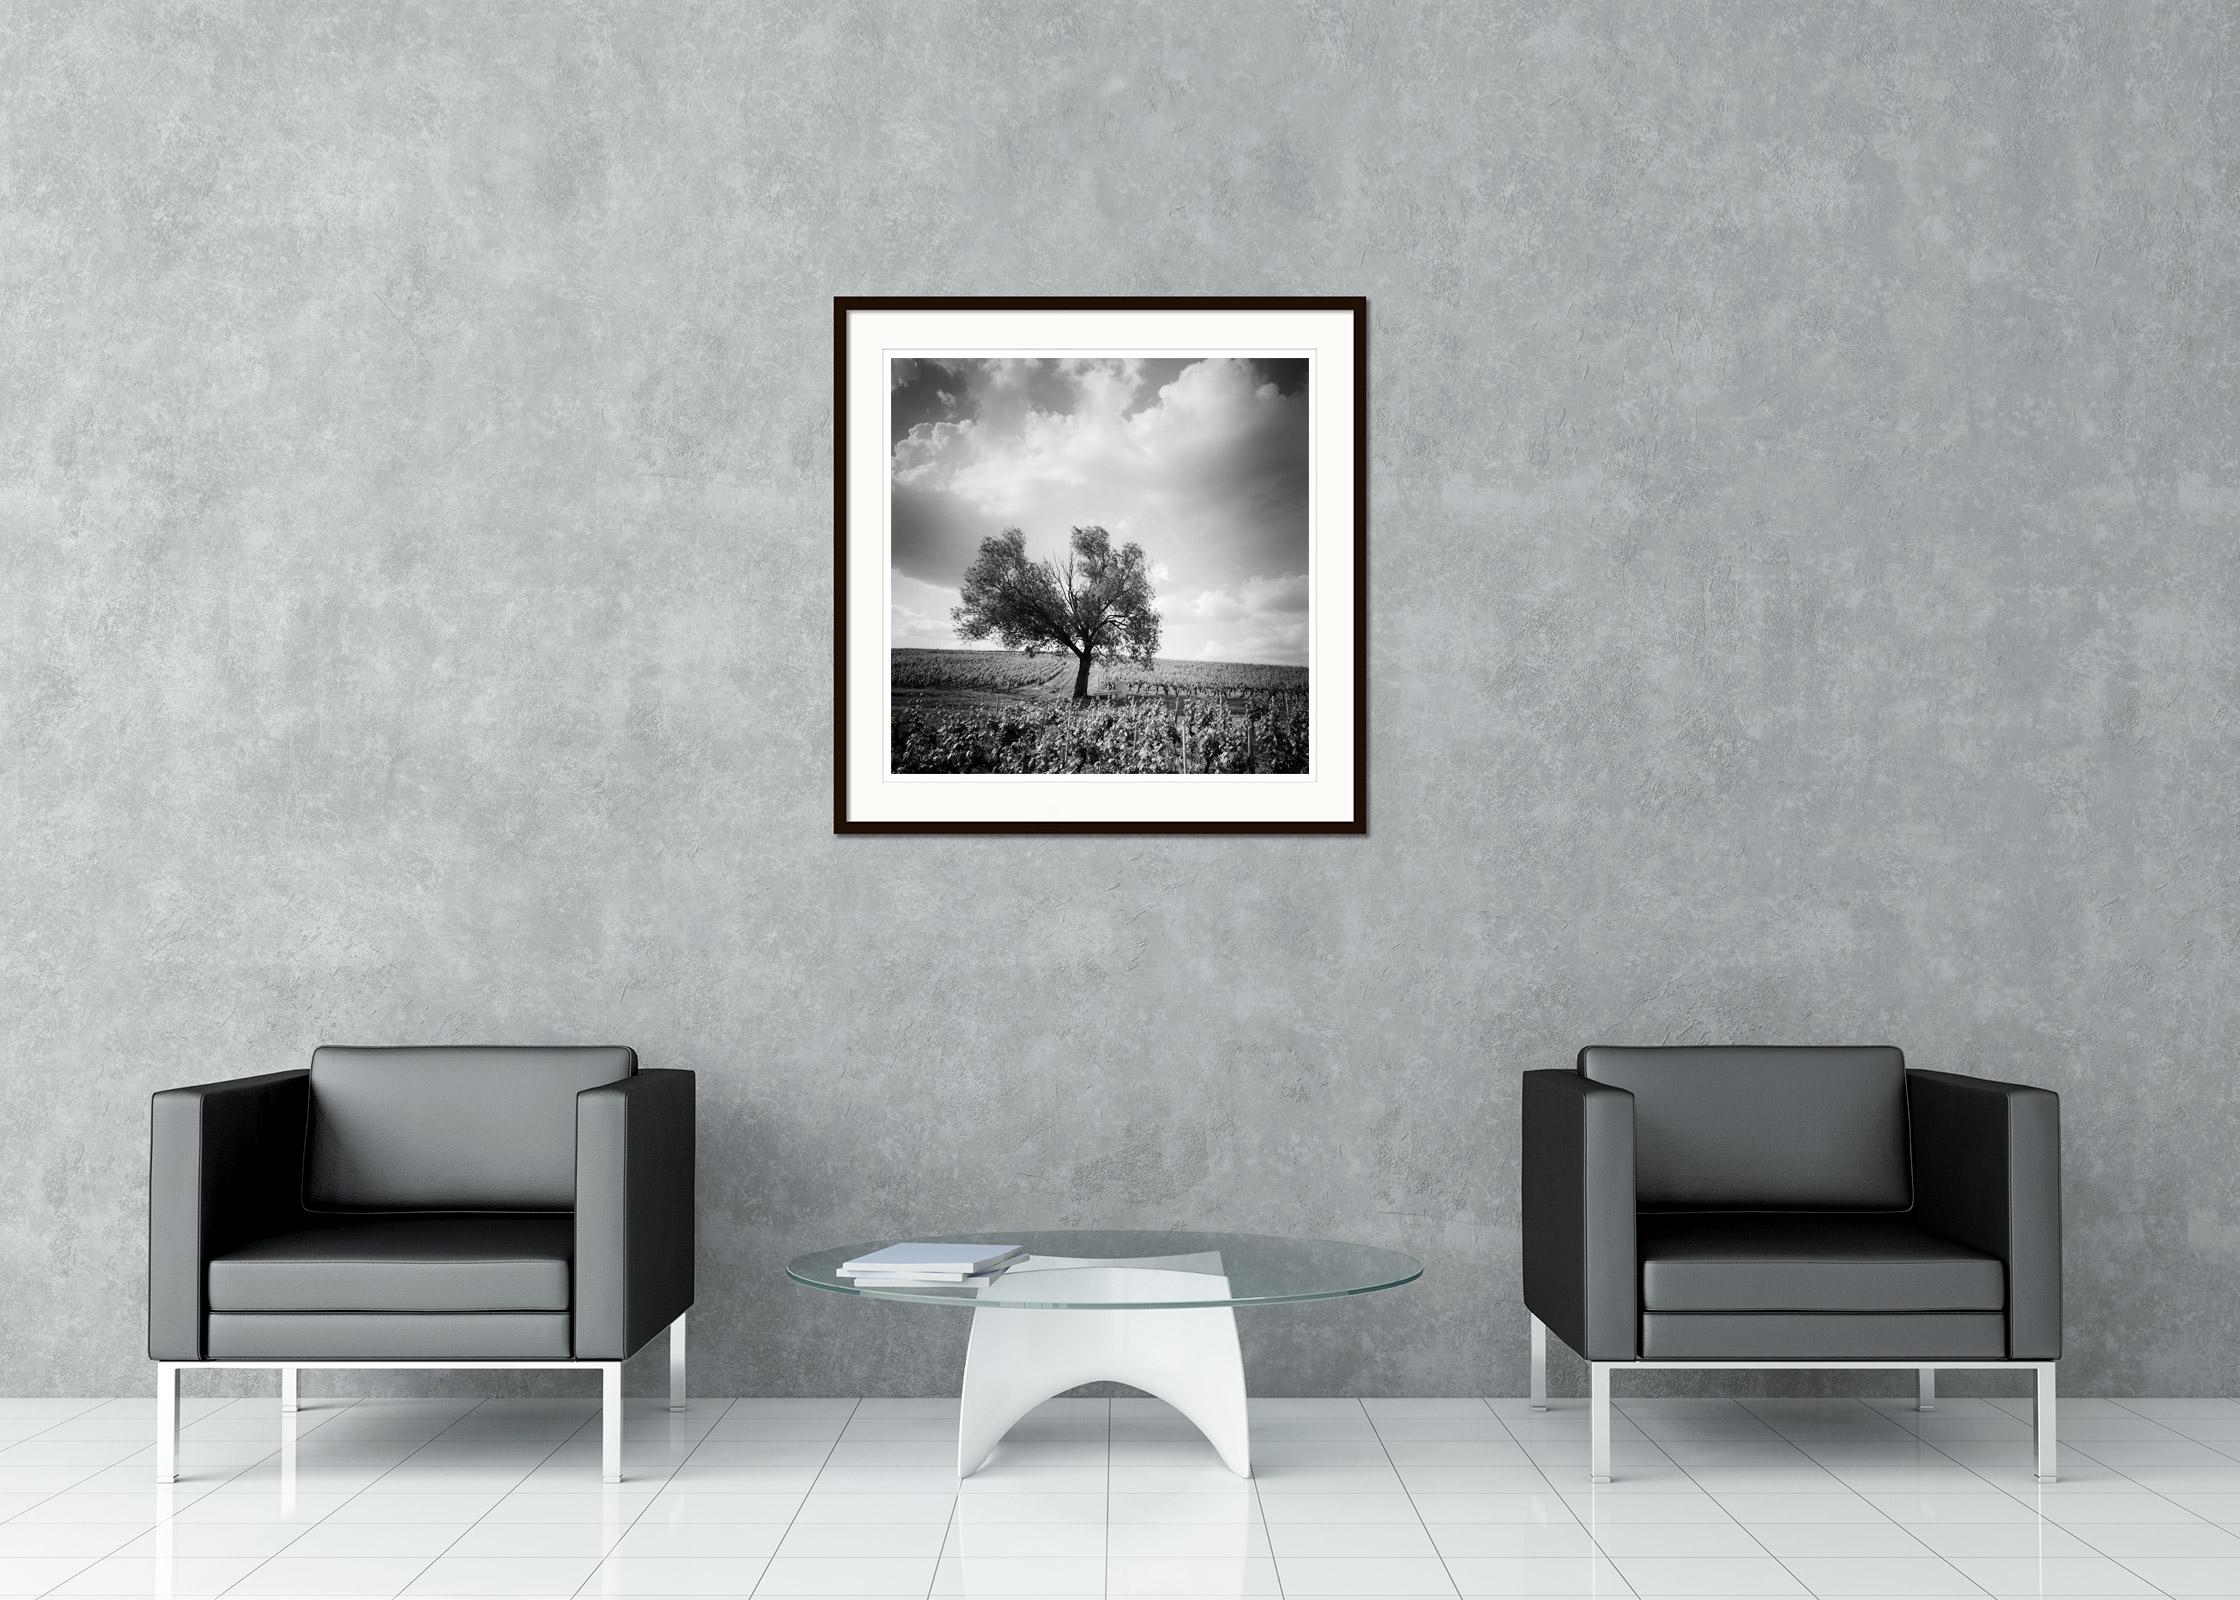 Black and White Fine Art Landscape Photography - Baum inmitten eines schönen Weinbergs mit großen Wolken in Bordeaux, Frankreich. Pigmenttintendruck, Auflage 5, signiert, betitelt, datiert und nummeriert vom Künstler. Mit Echtheitszertifikat.